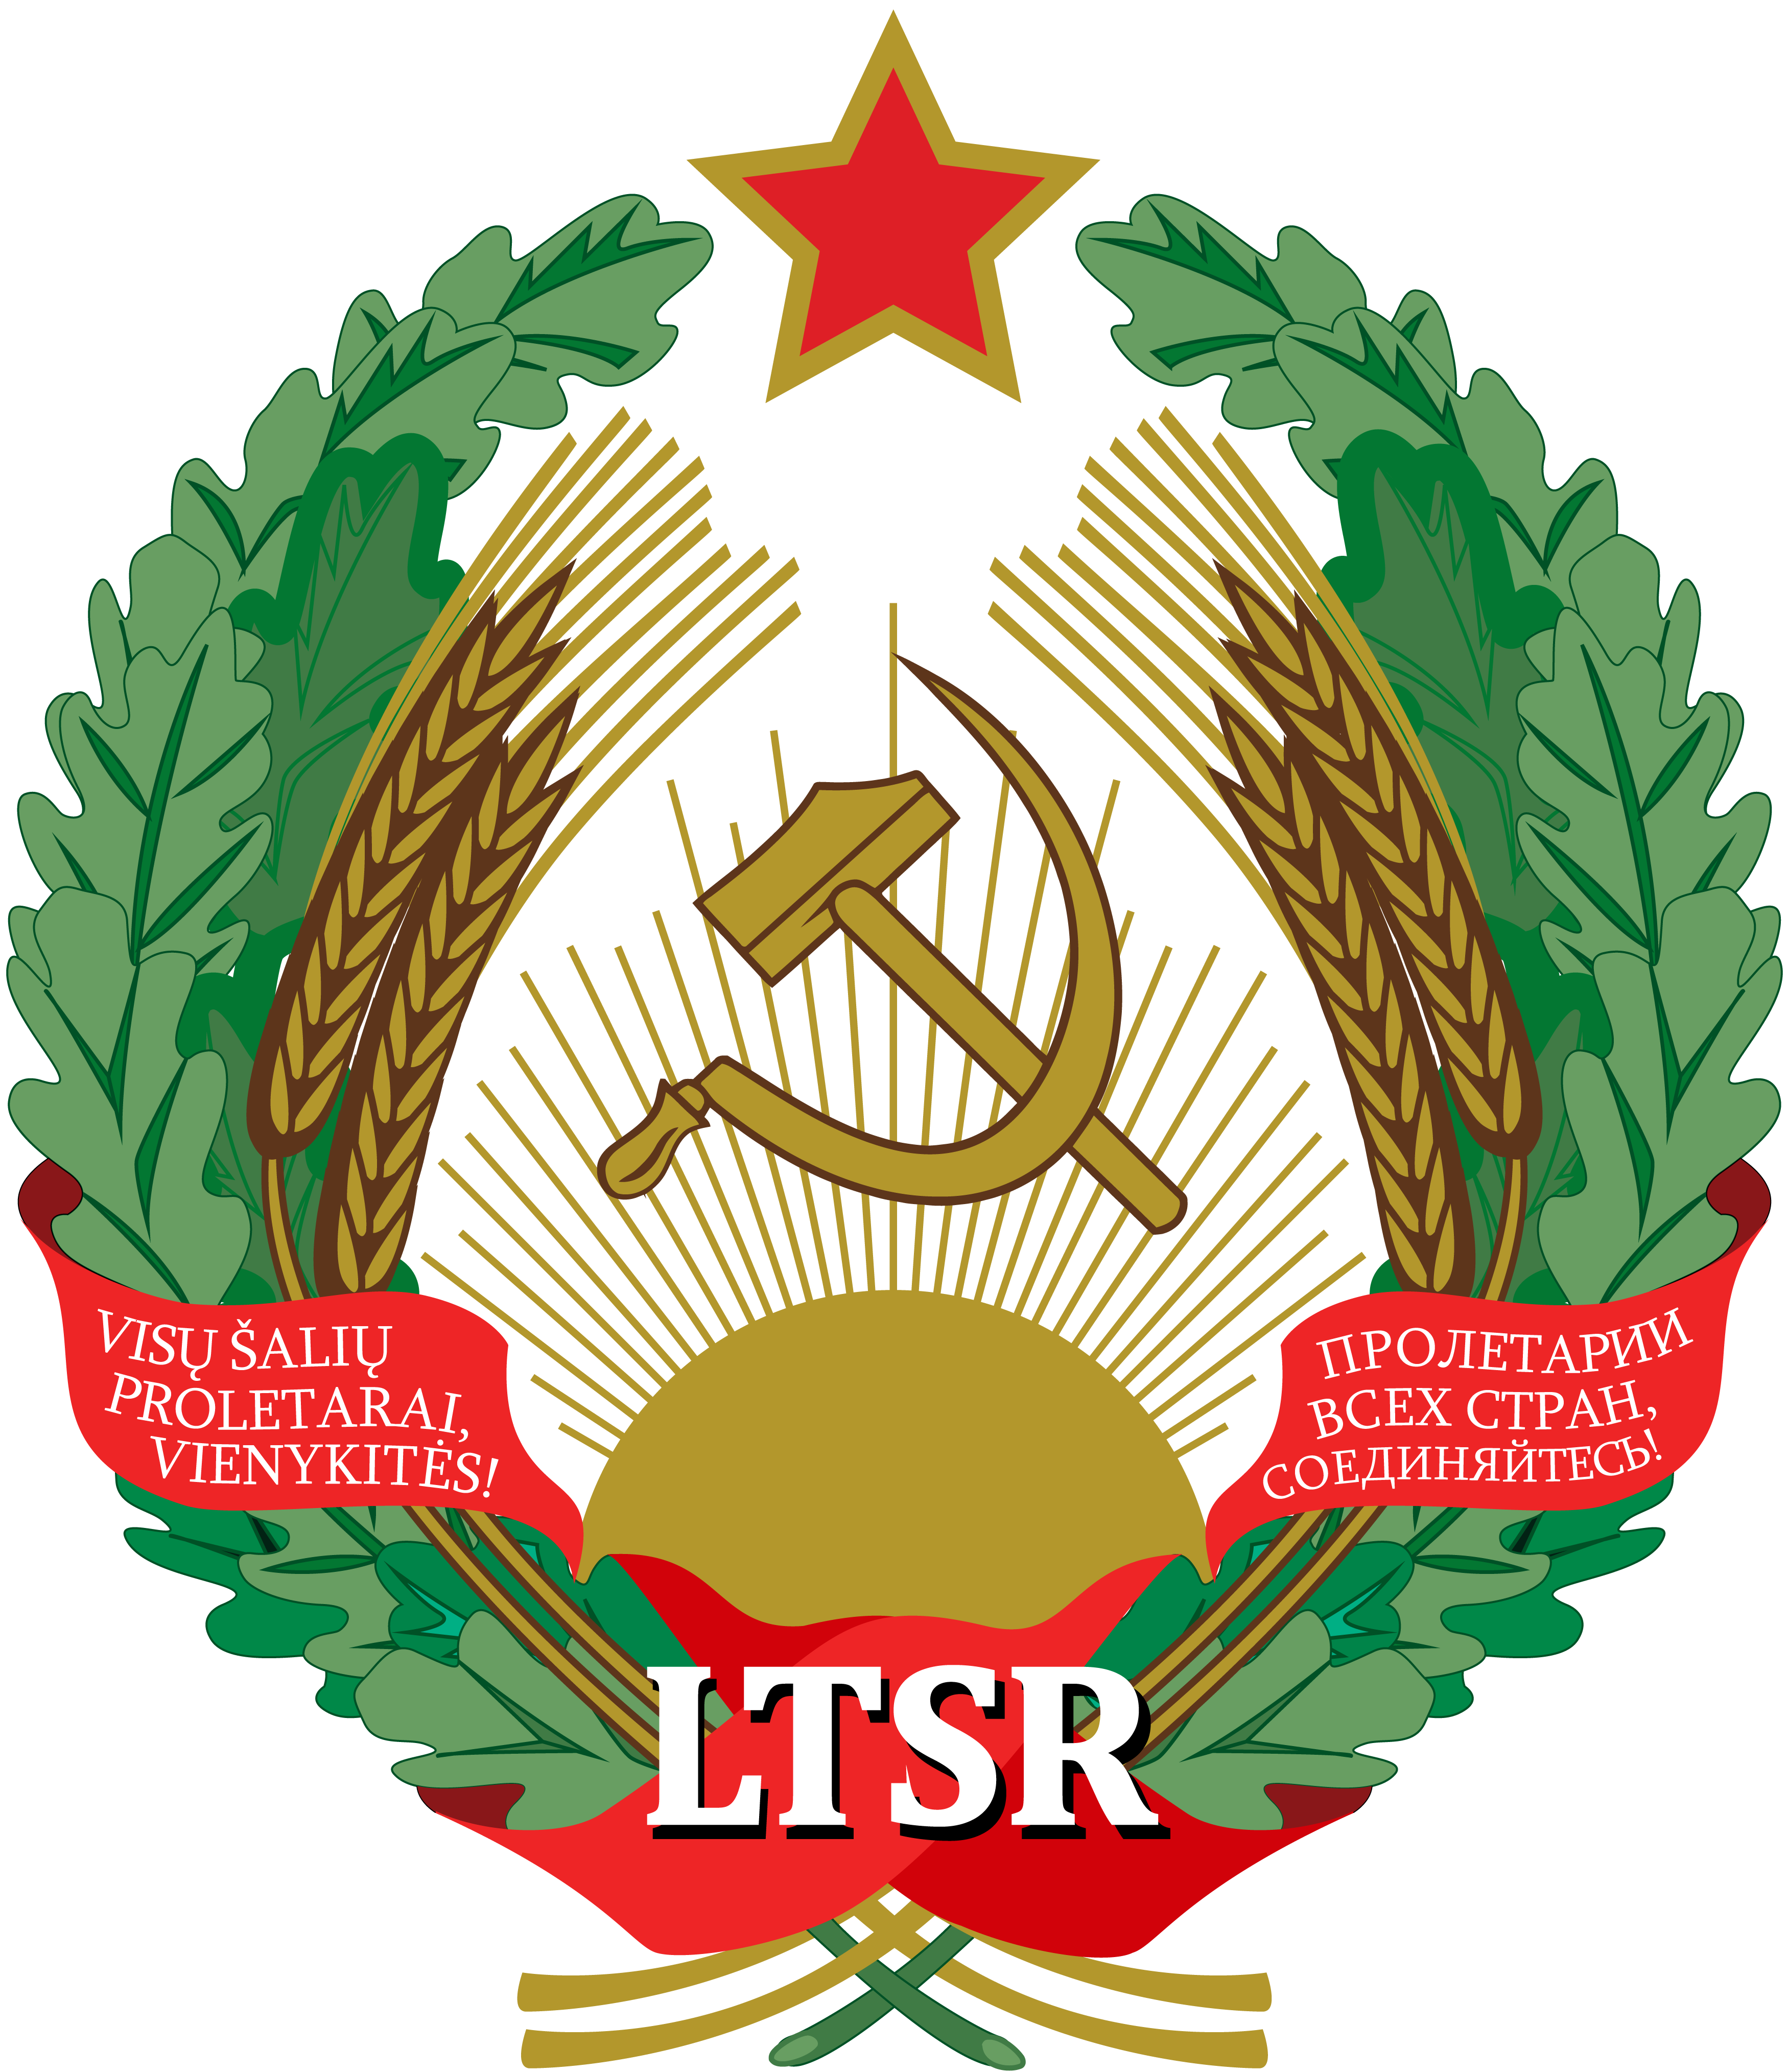 立陶宛蘇維埃社會主義共和國國徽